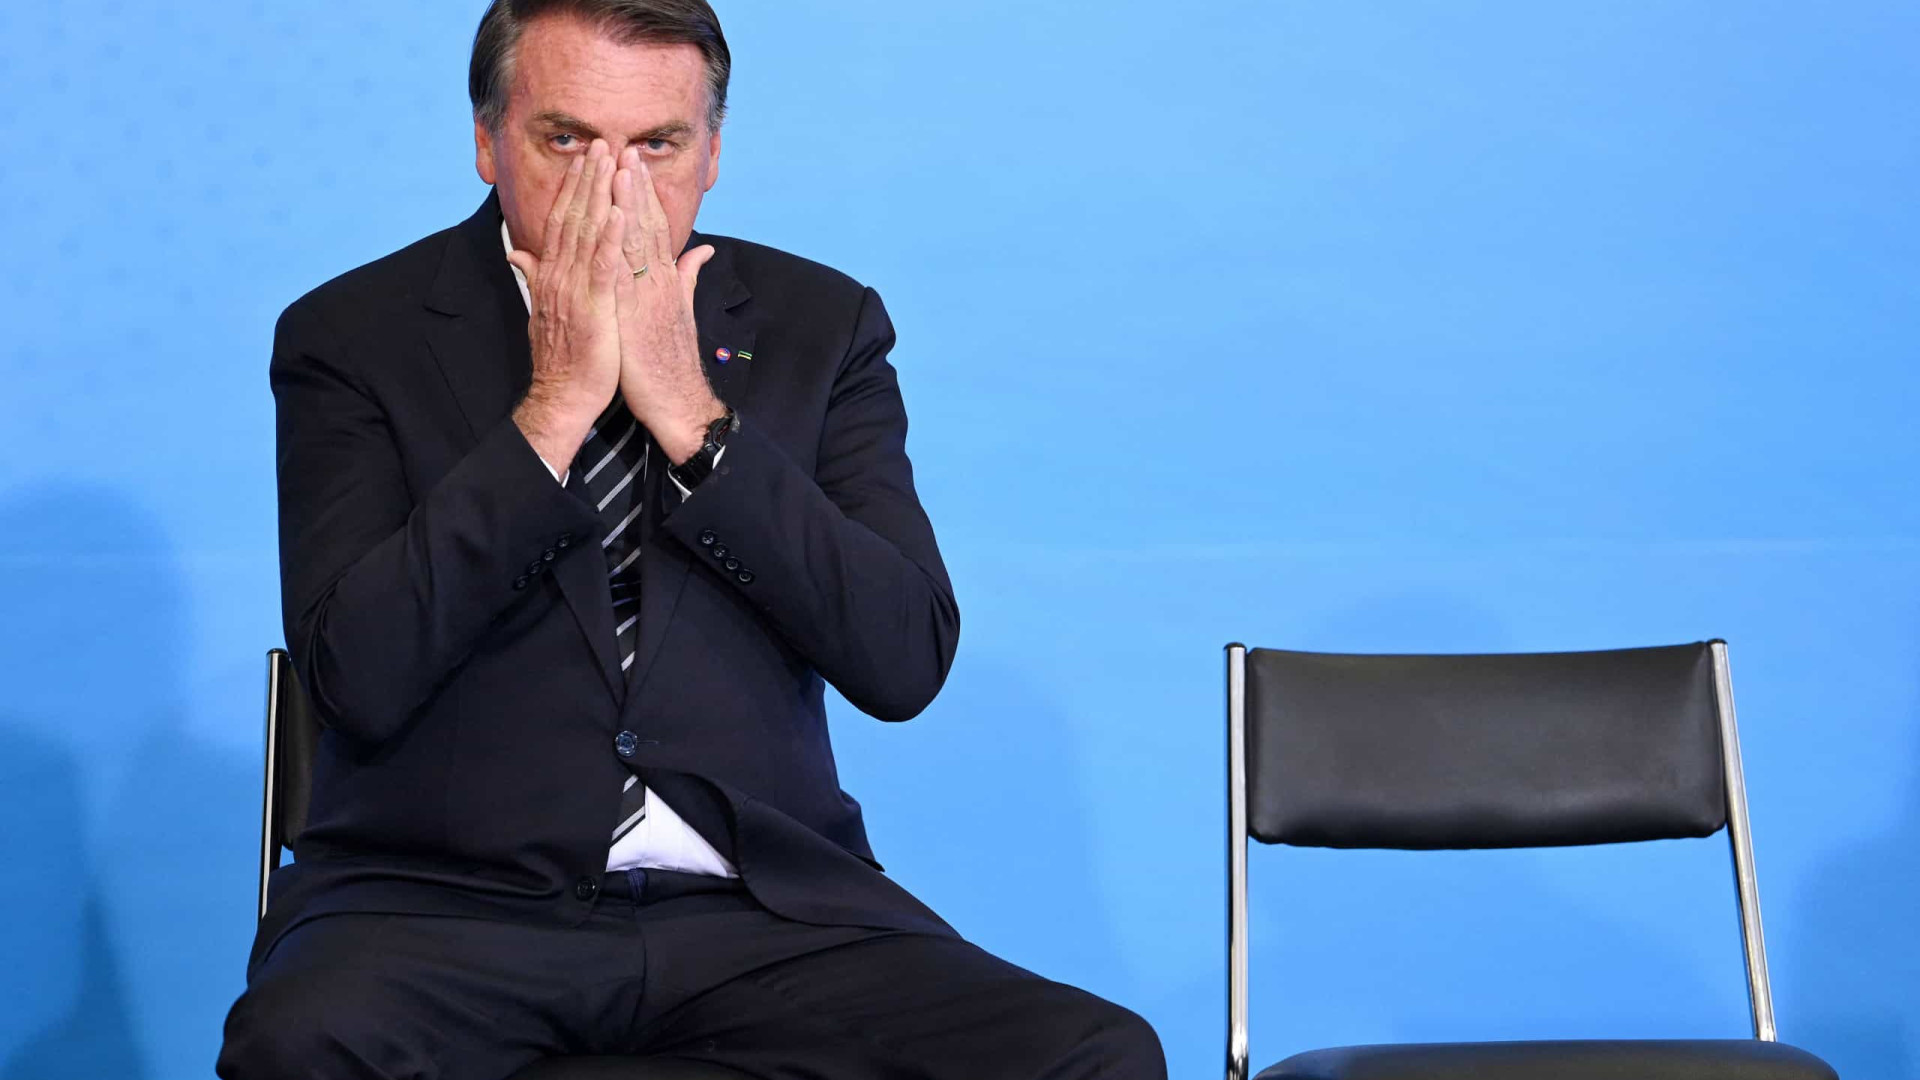 Justiça Federal proíbe Bolsonaro de usar termo 'lepra' em declarações